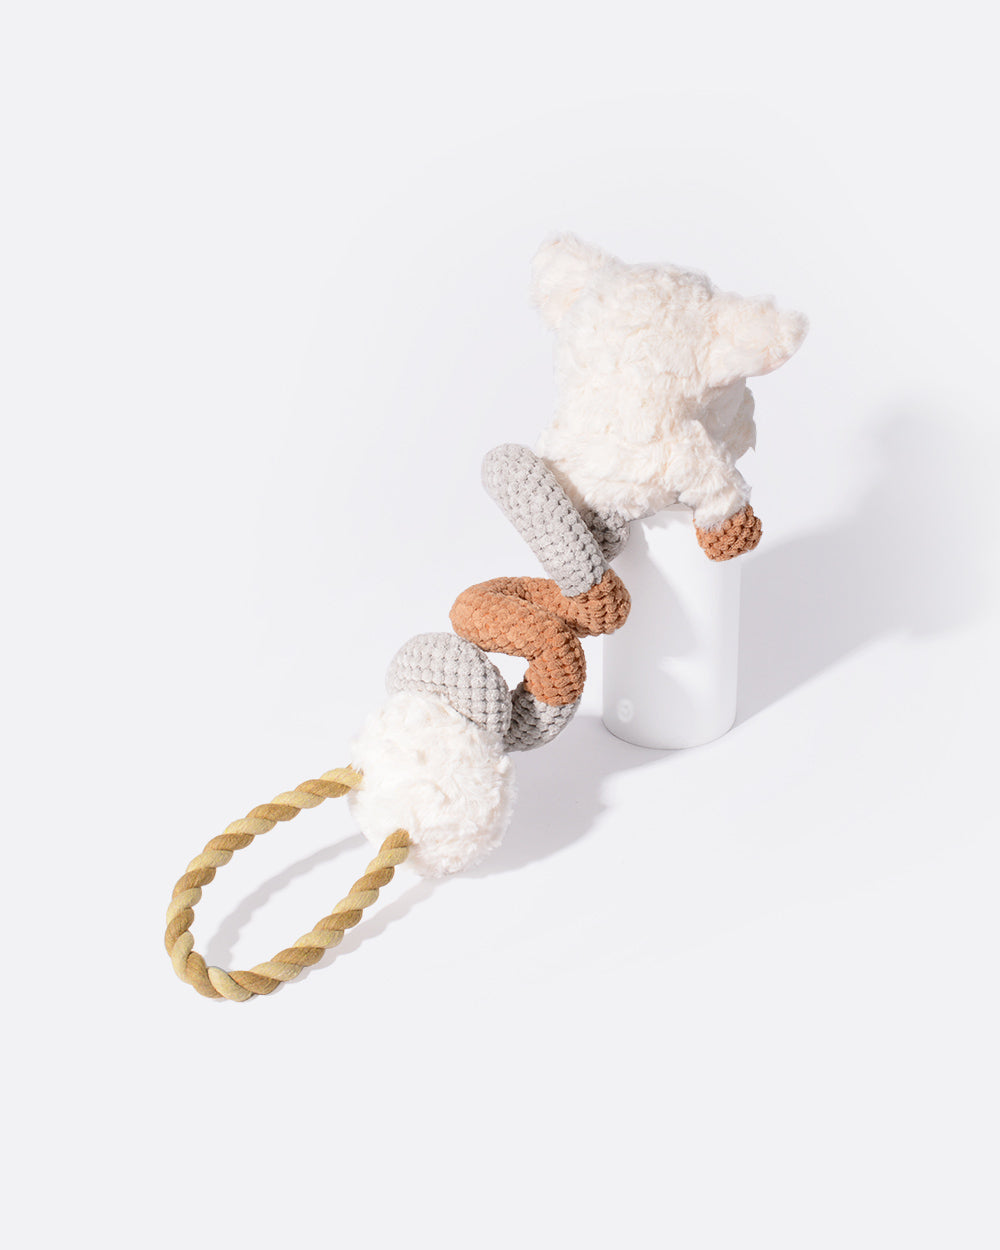 毛絨吱吱作響的繩索玩具 - 捲捲豬